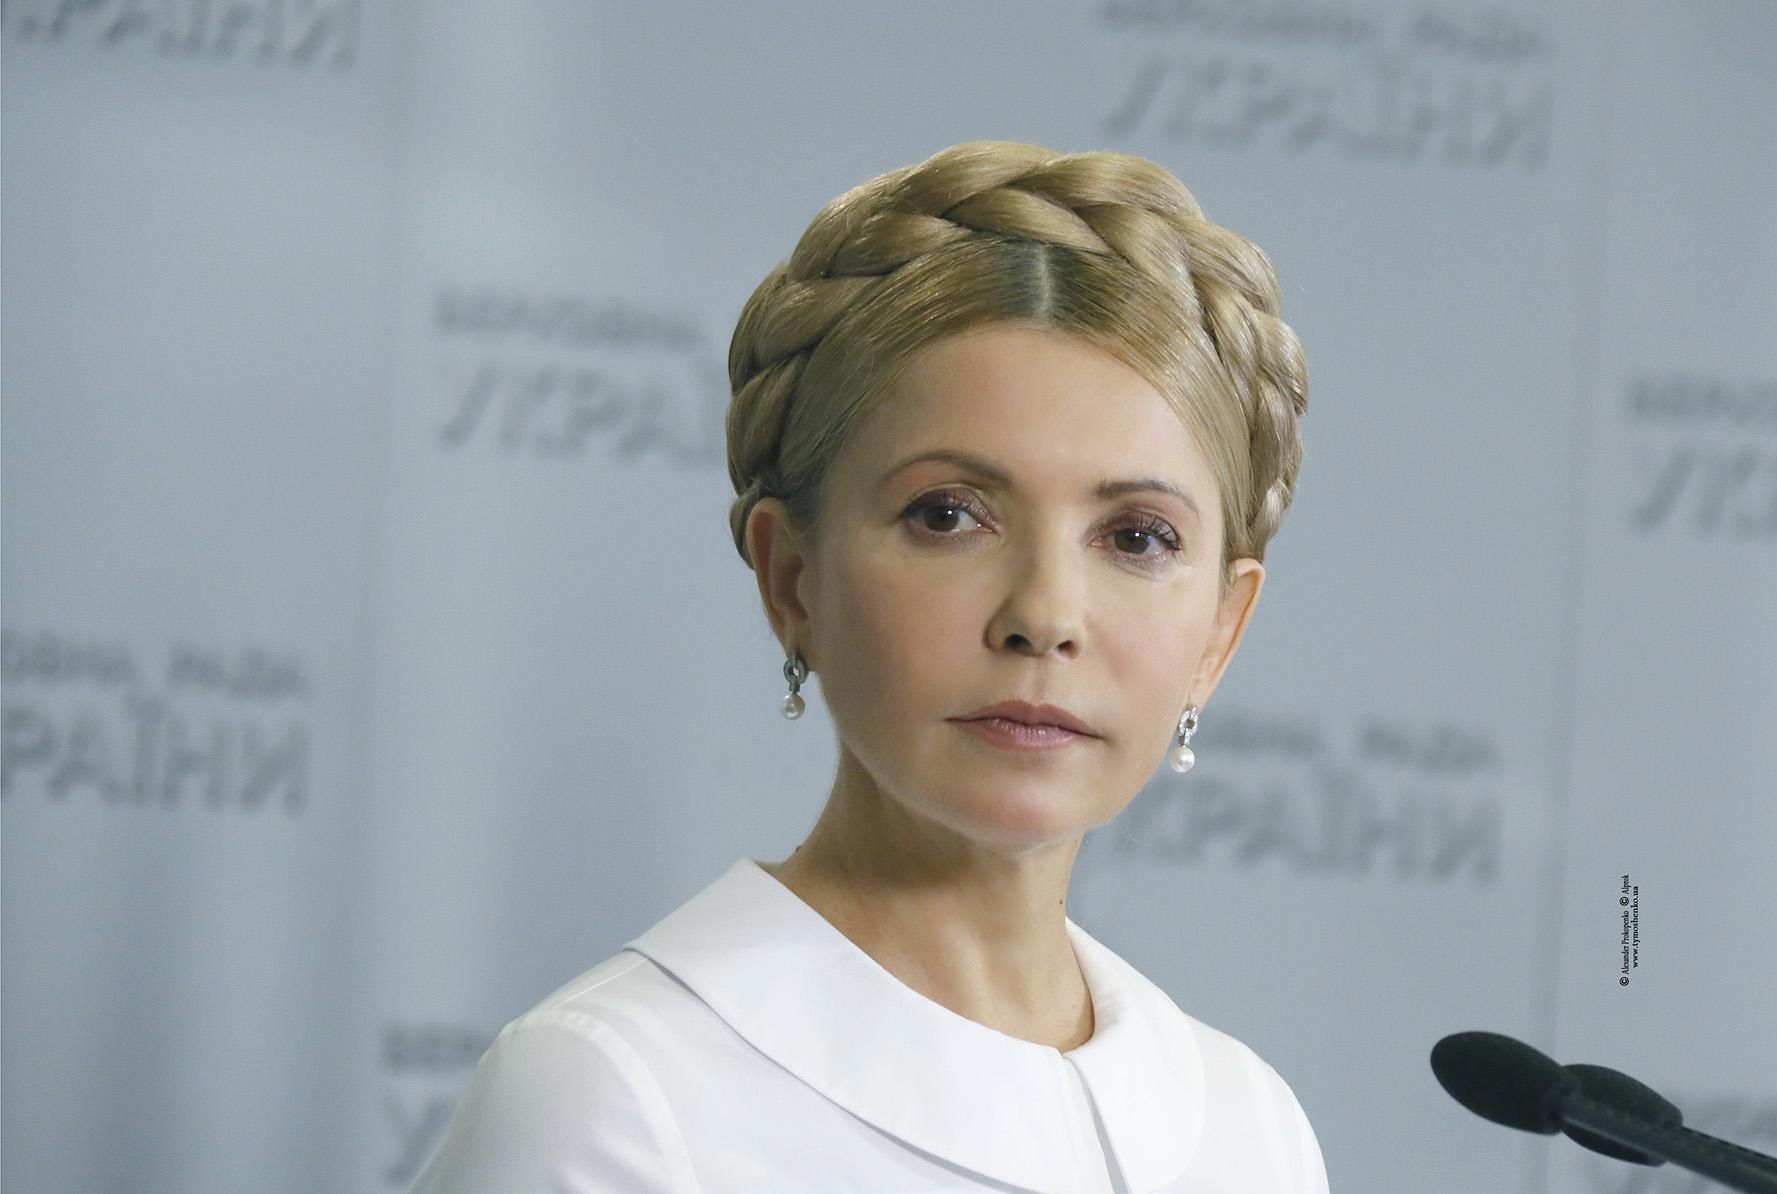 Тимошенко програла Ляшку, відмовившись від дебатів, – експерт